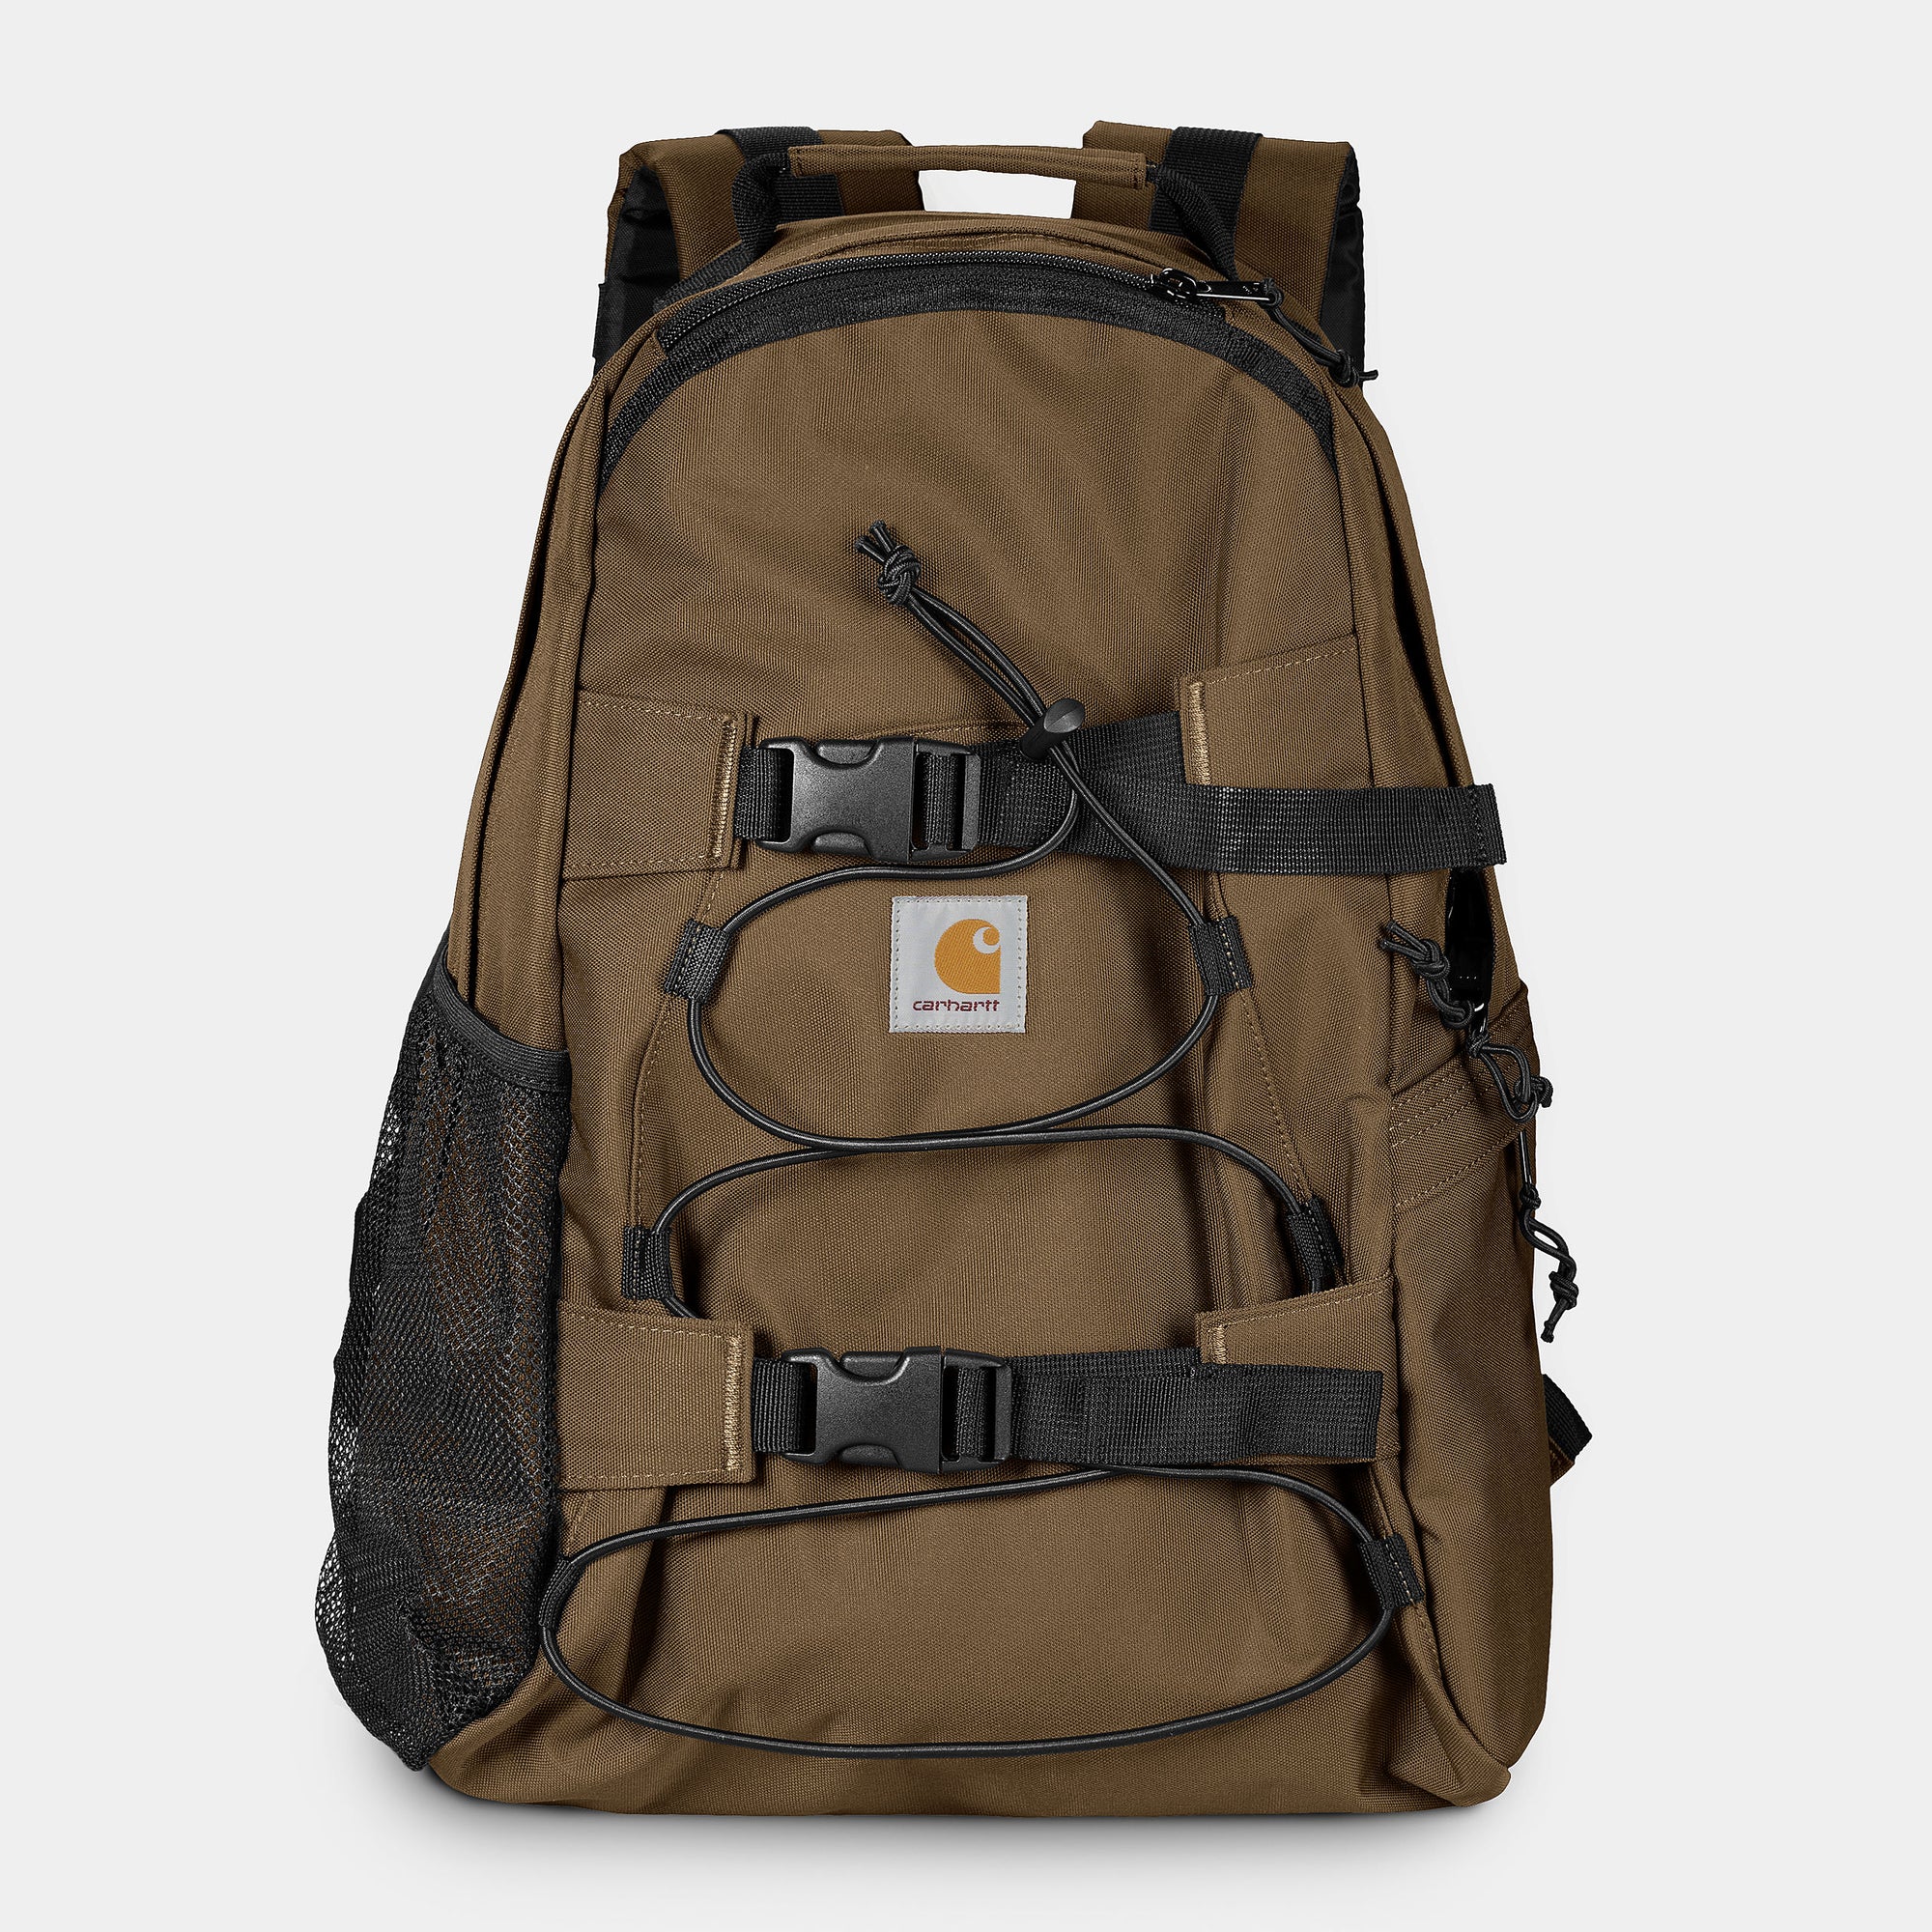 Carhartt WIP Kickflip Backpack - Lumber